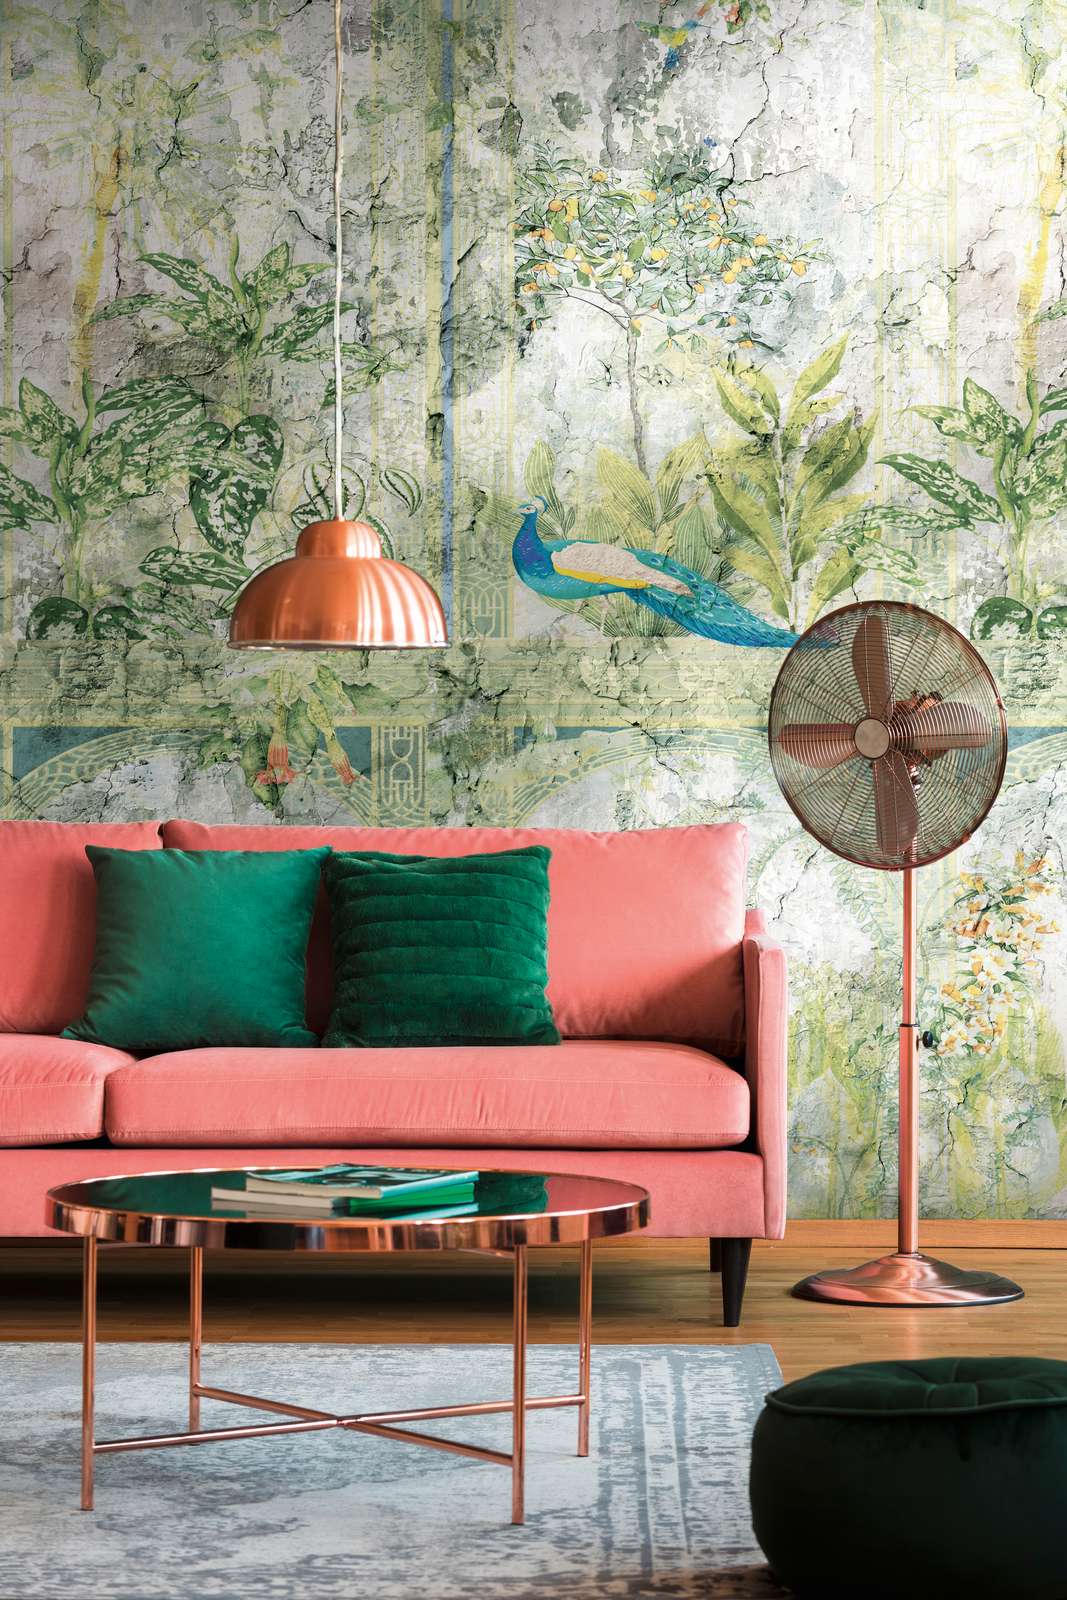             Onderlaag behang met jungle look en vogels in vintage stijl - groen, blauw, grijs
        